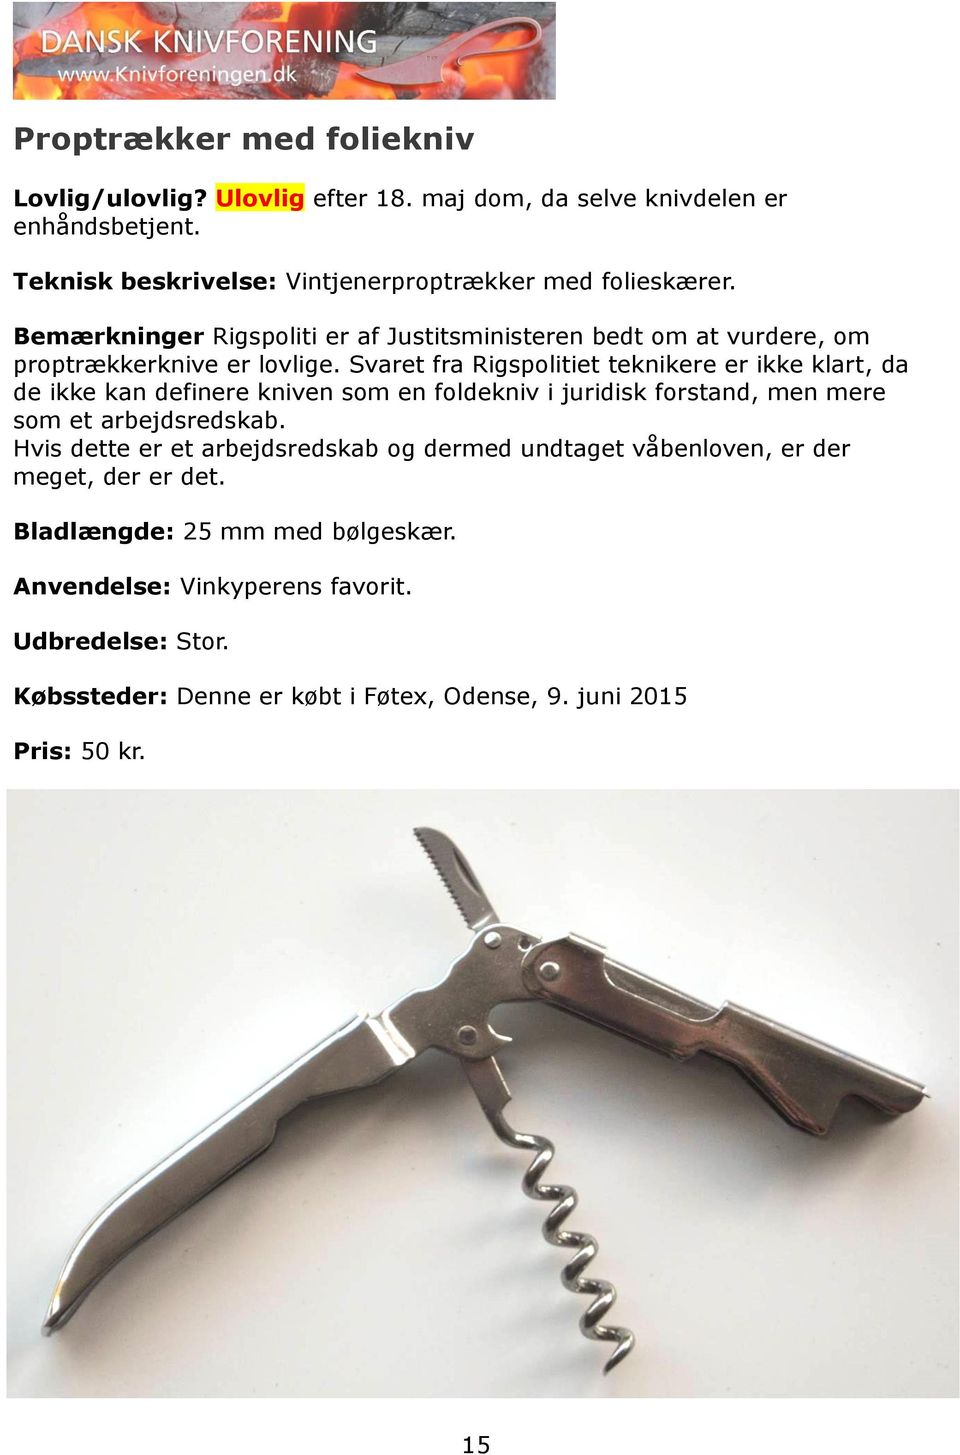 Lovlige og ulovlige knive og værktøj i Danmark - PDF Gratis download